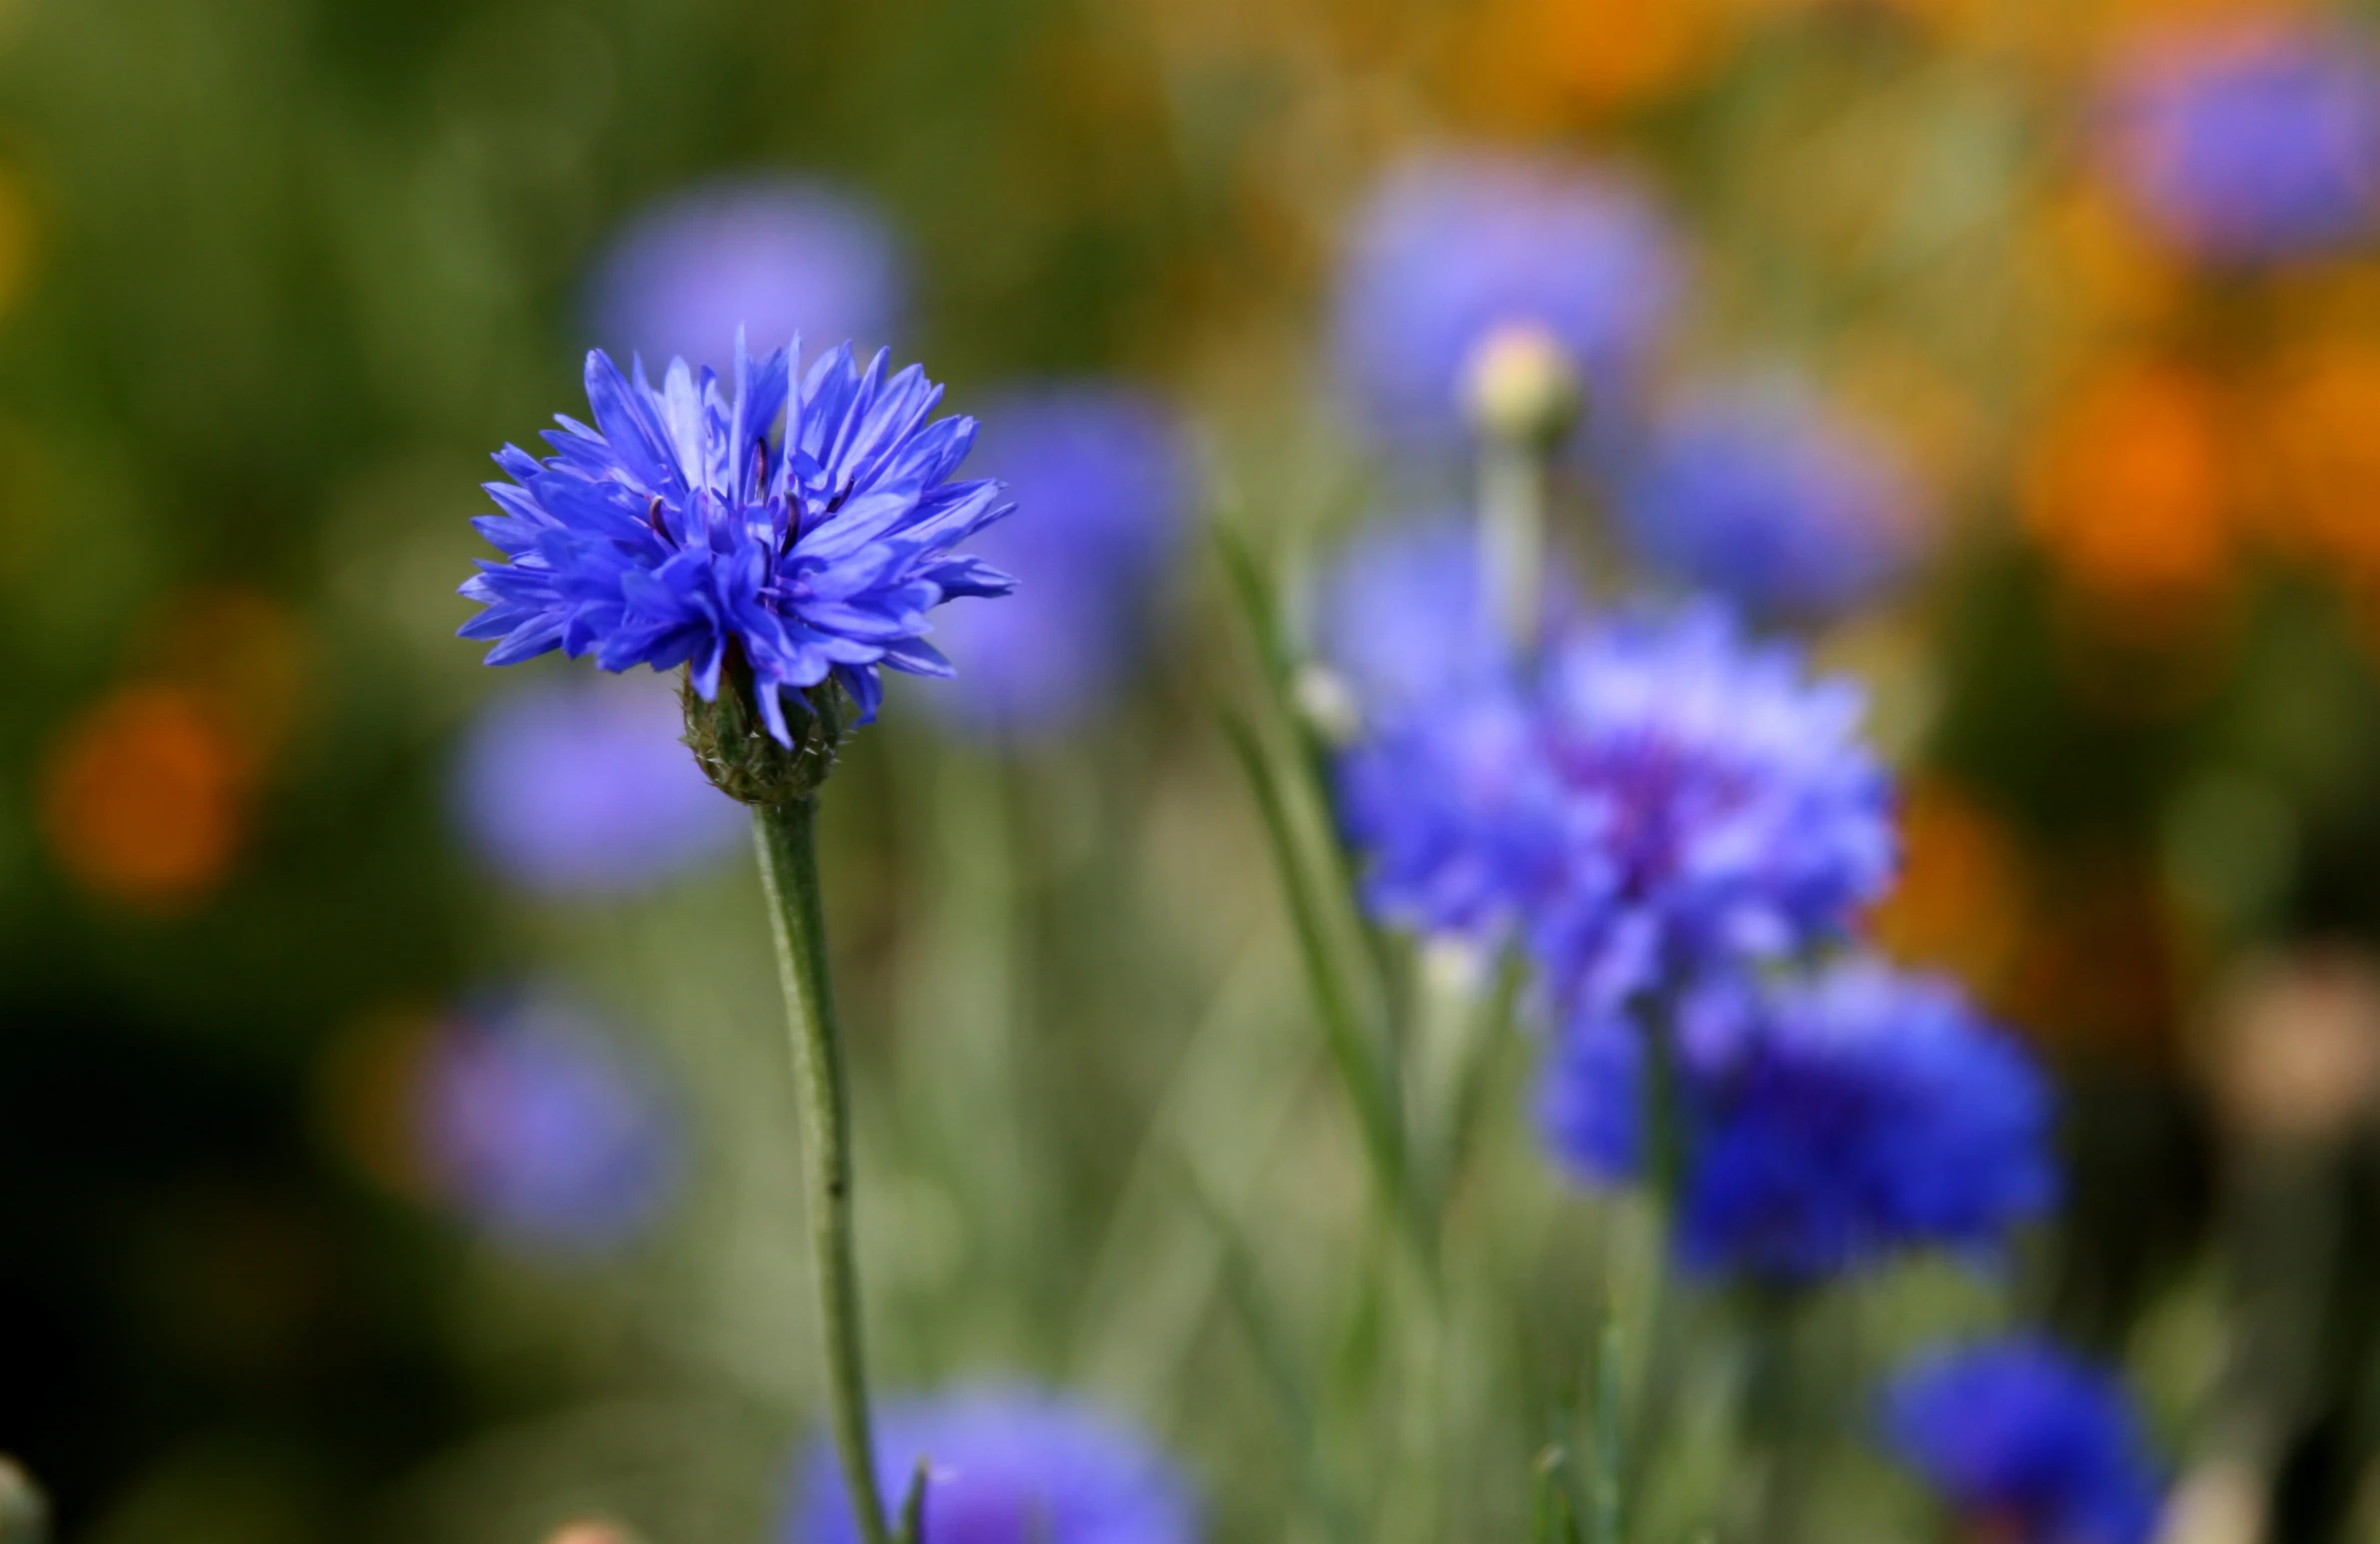 blue flowers growing in an open green area